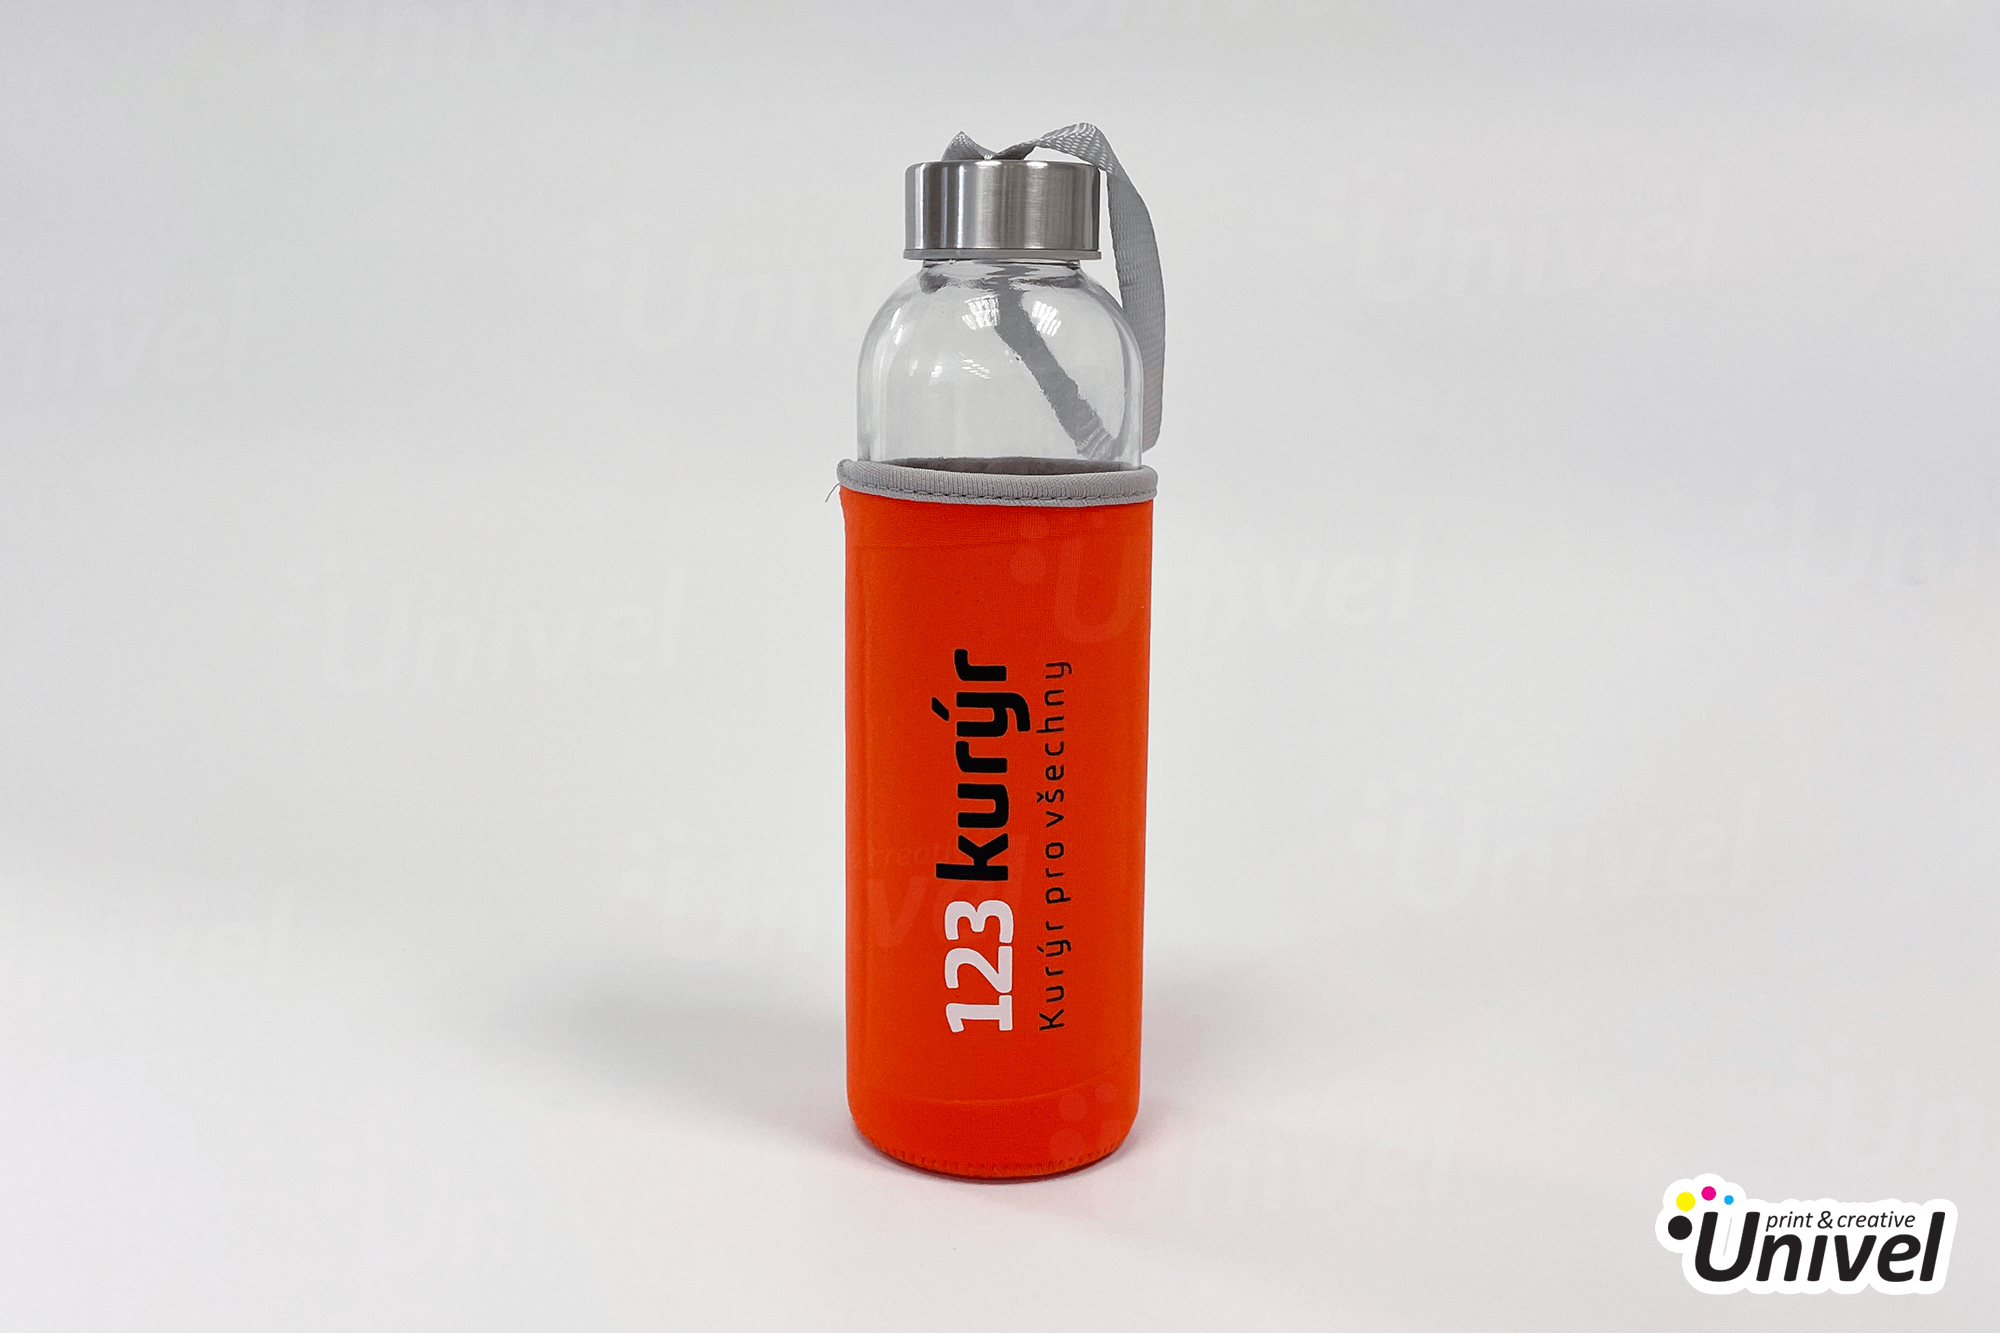 Univel 2021 - Reklamné predmety - Nažehlené logo 123 kurýr sklenená fľaša s neoprénovým púzdrom